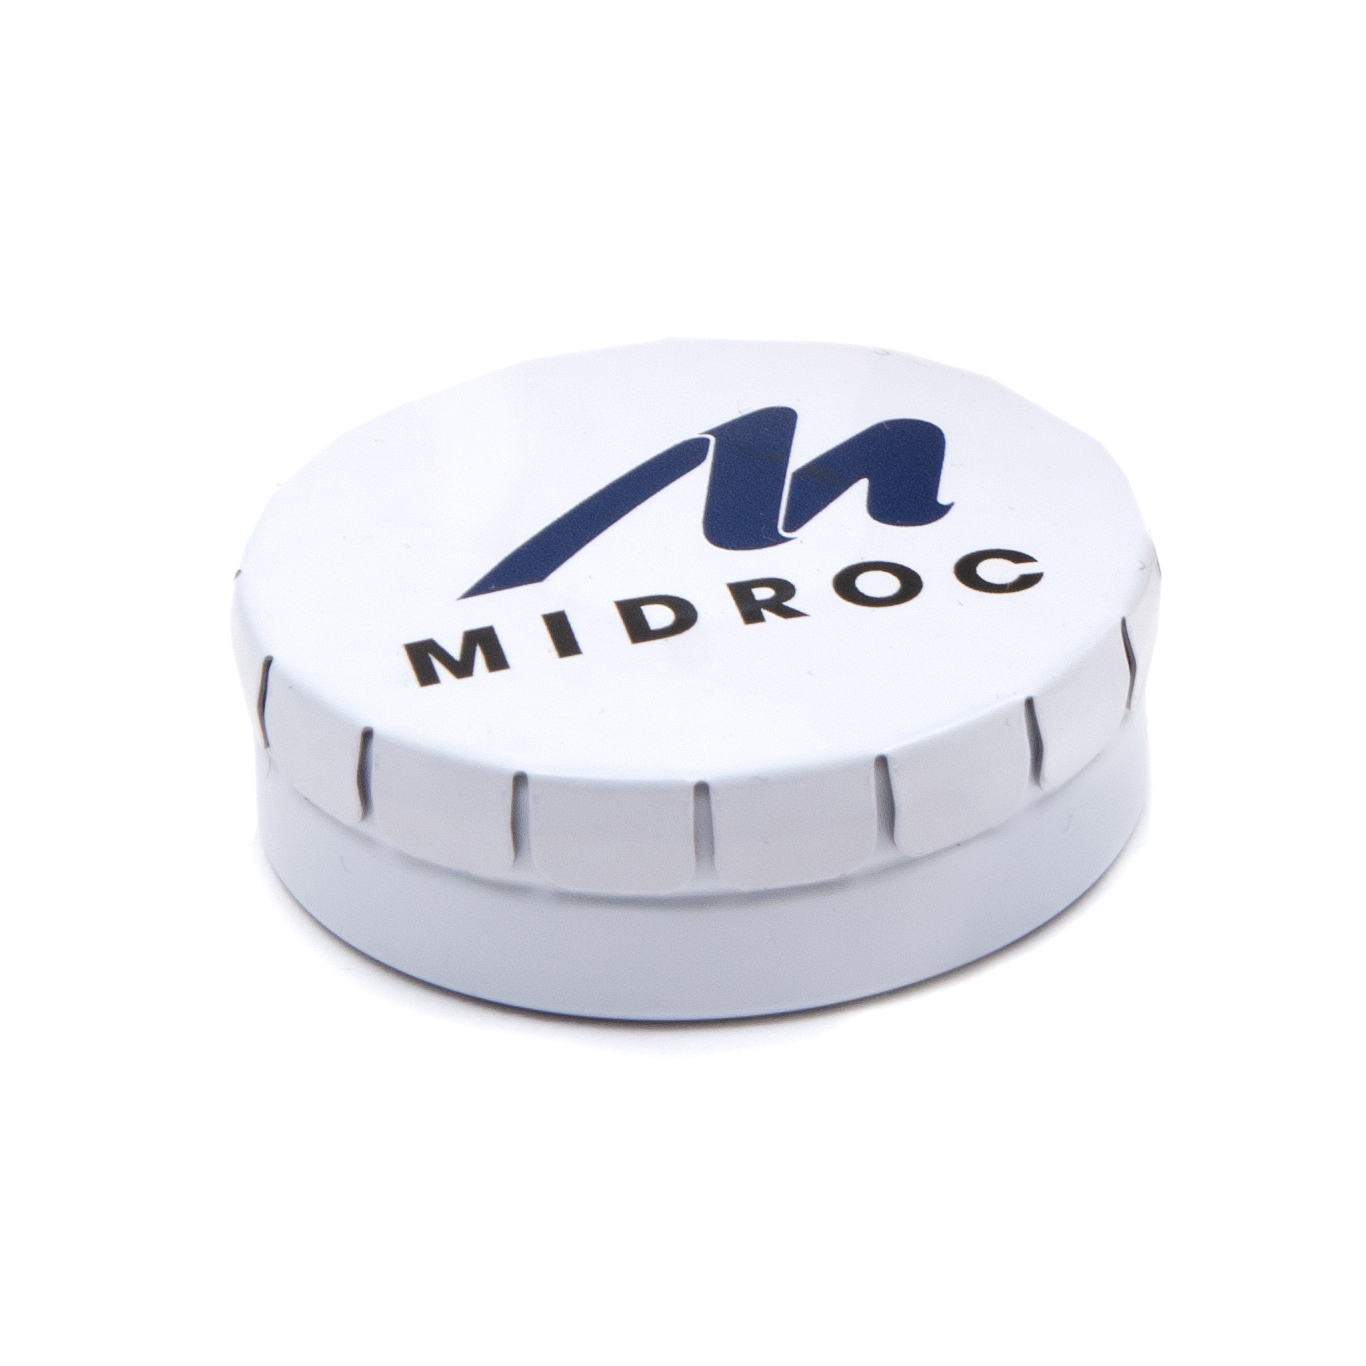 midroc clickclack